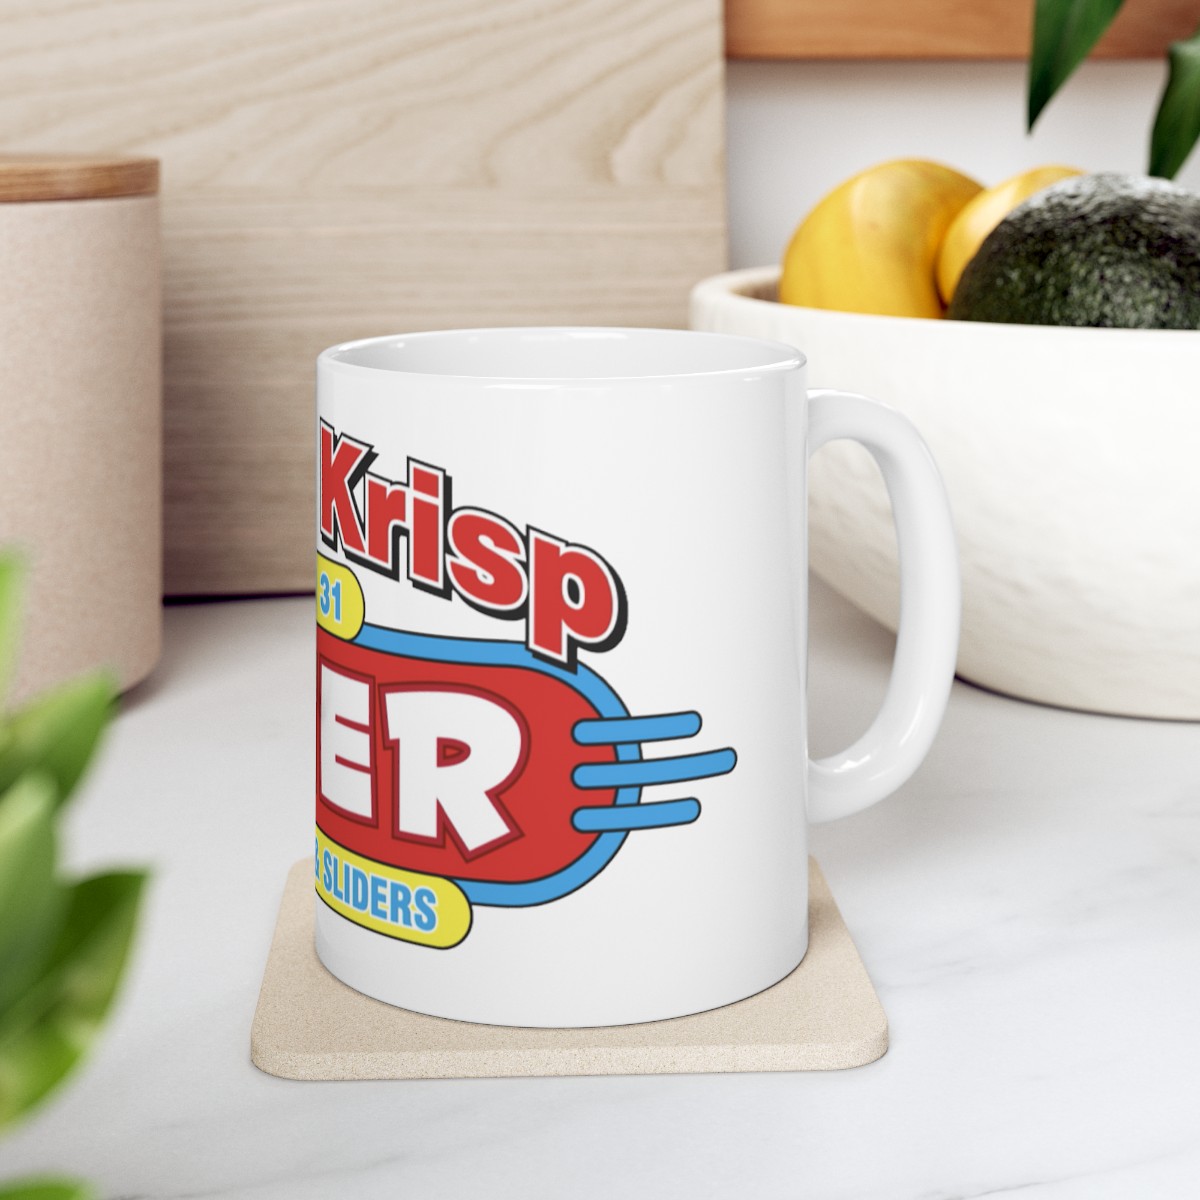 BKD Mug - Large Logo product thumbnail image